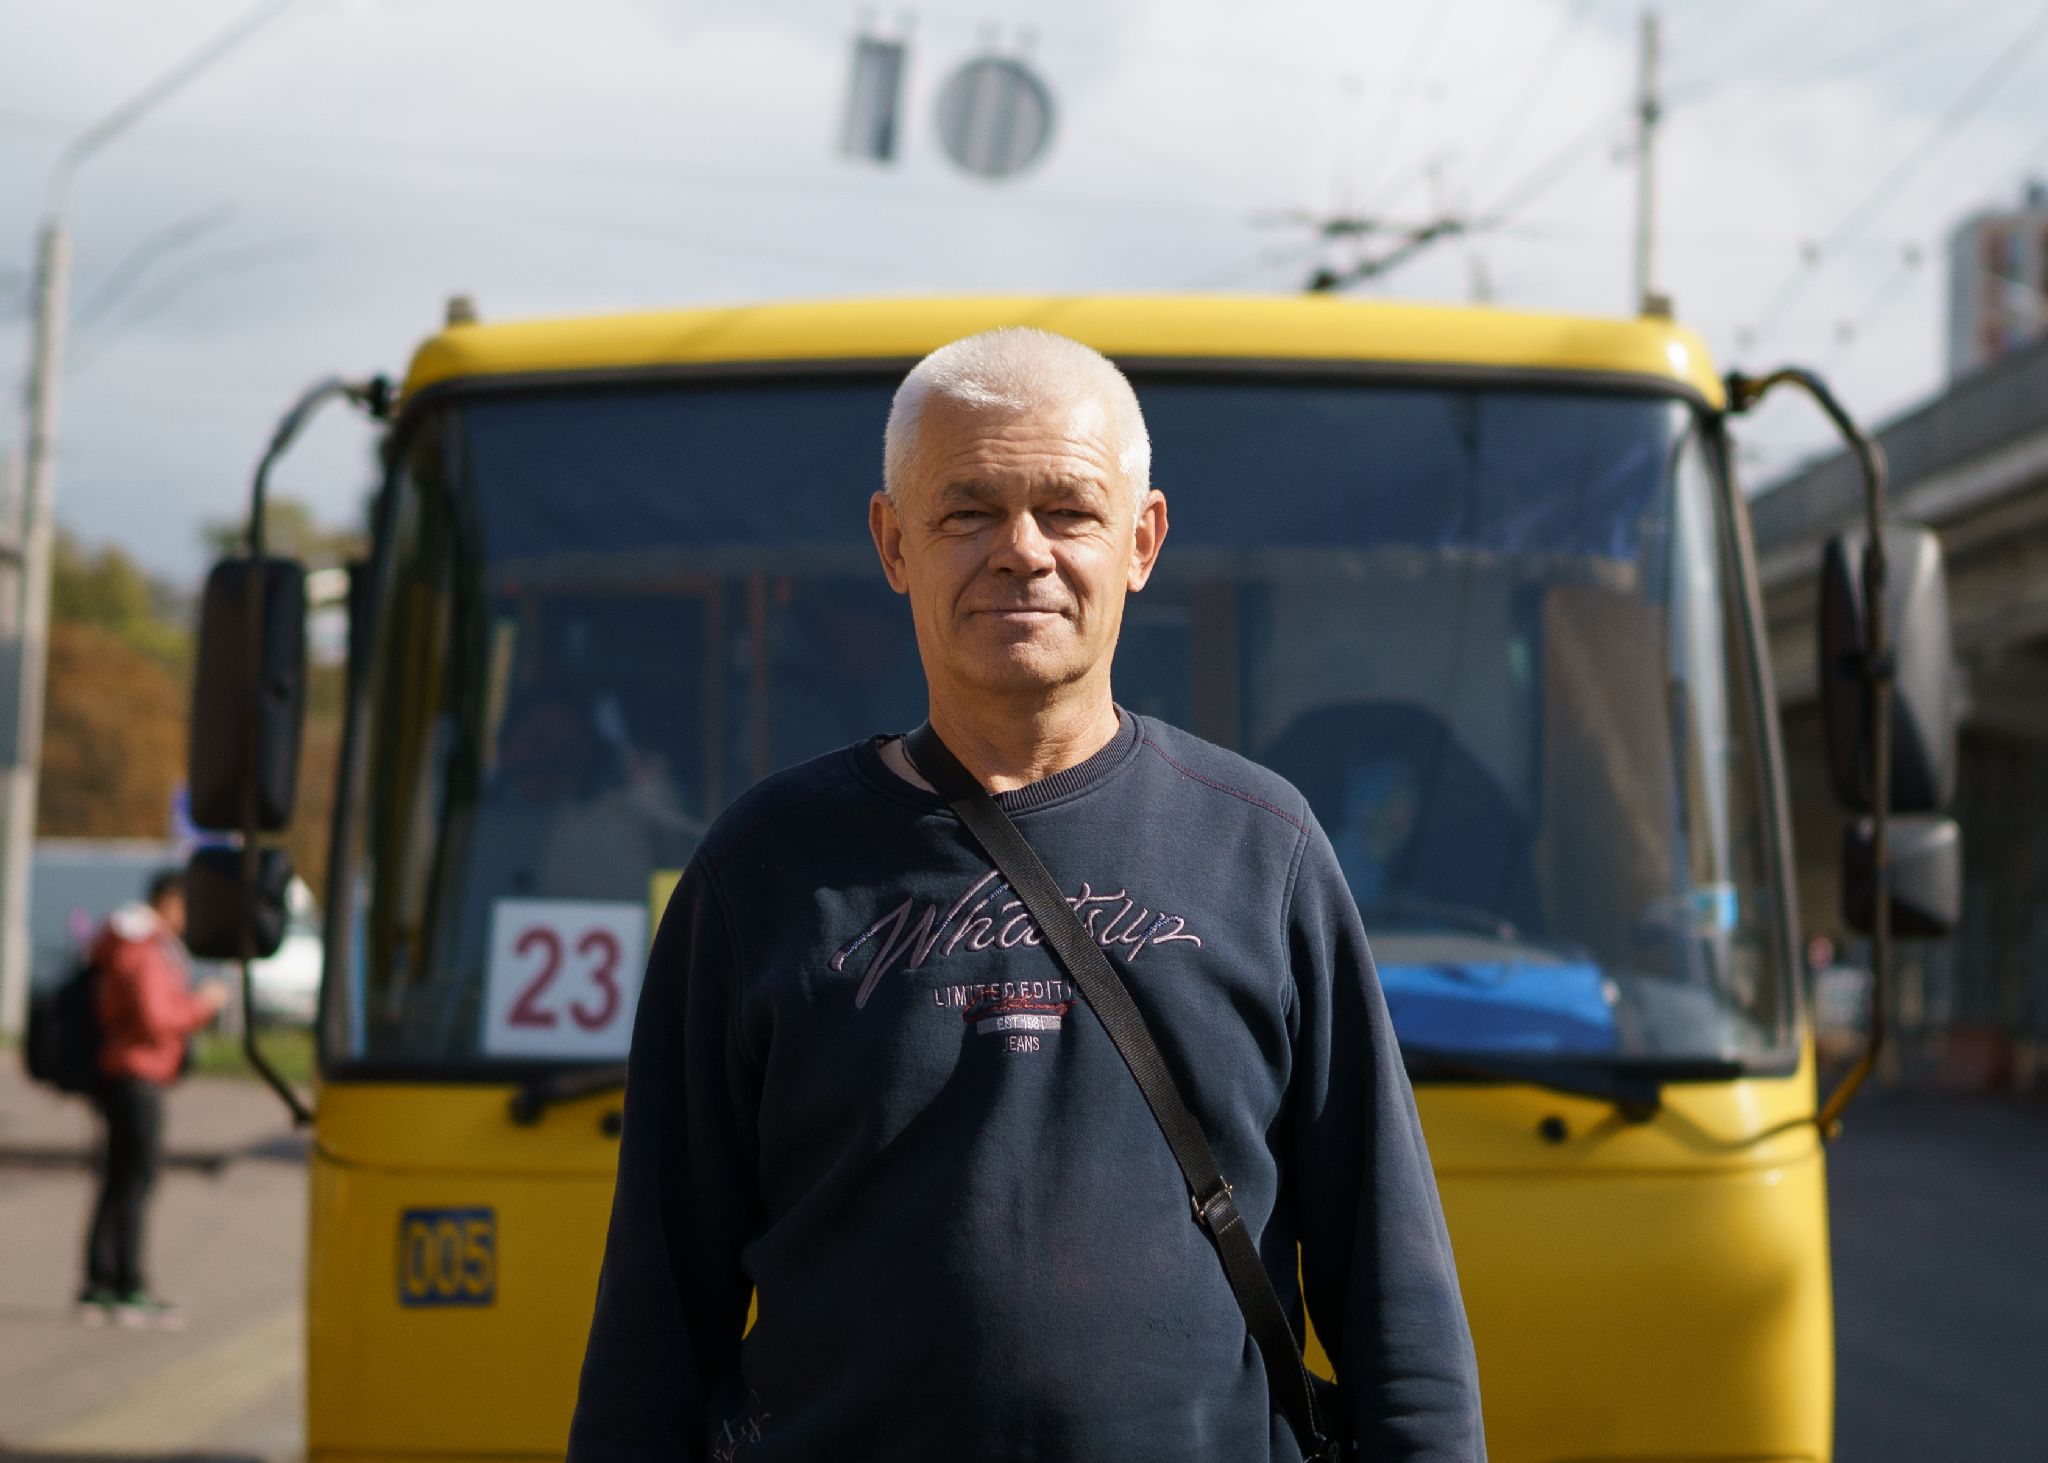 Декор в киевских автобусах, Киев, октябрь 2021 года. Фото: Дмитрий Пруткин